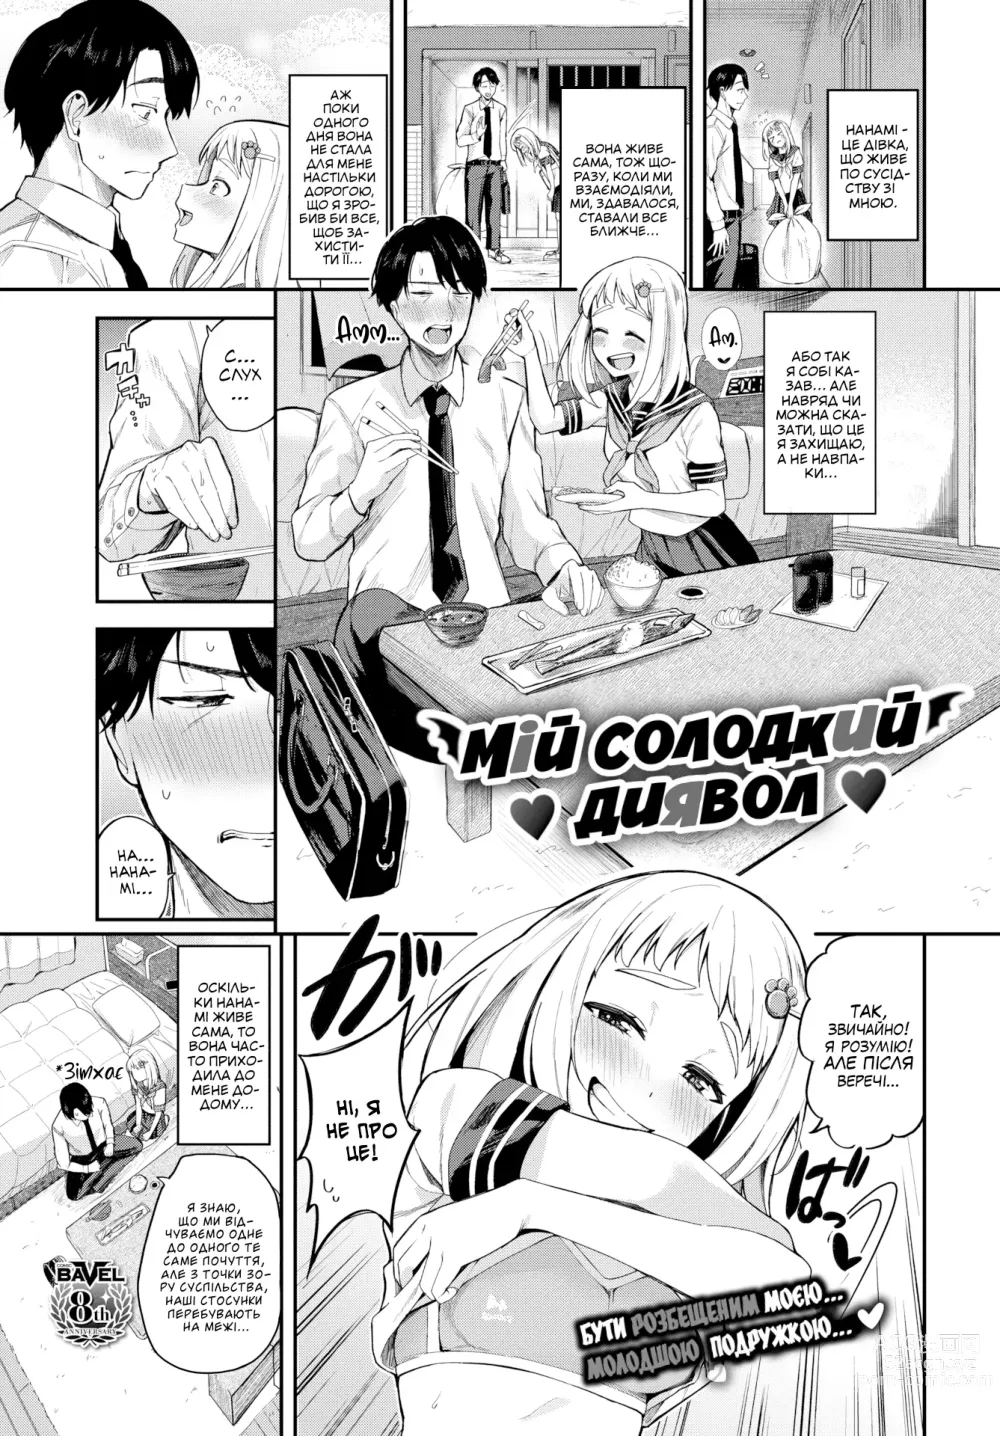 Page 1 of manga [Тоджьо Цукуші] Мій солодкий диявол [Без цензури]  LOLICORNUS (decensored)